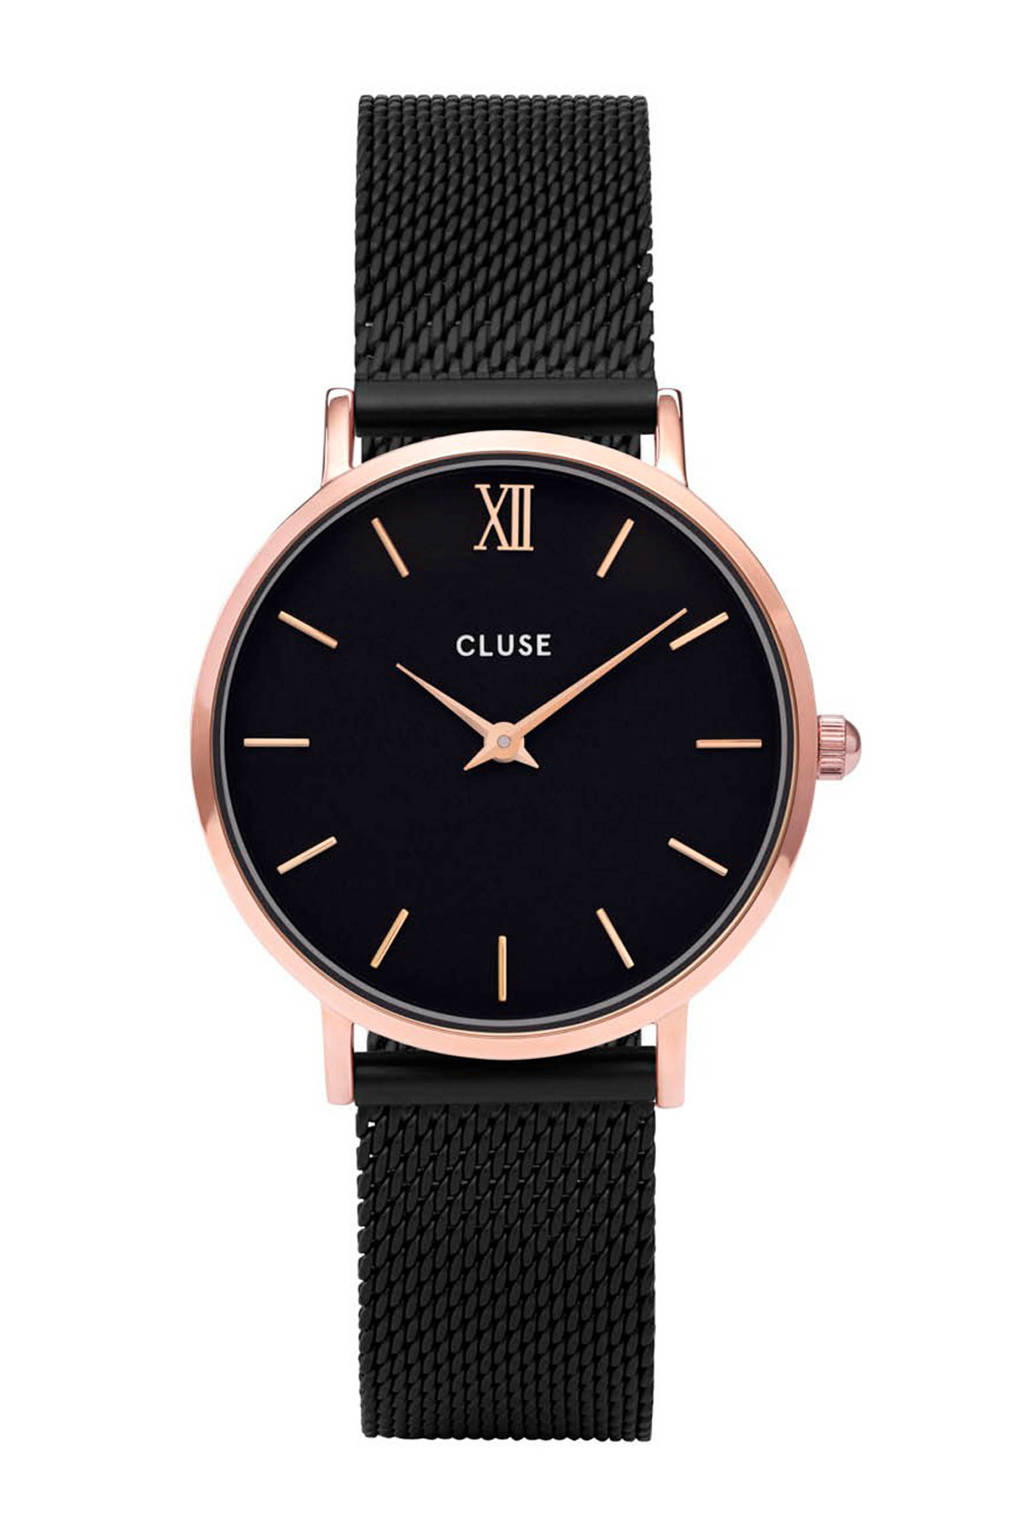 CLUSE Minuit roségoudkleurig/zwart dames horloge |